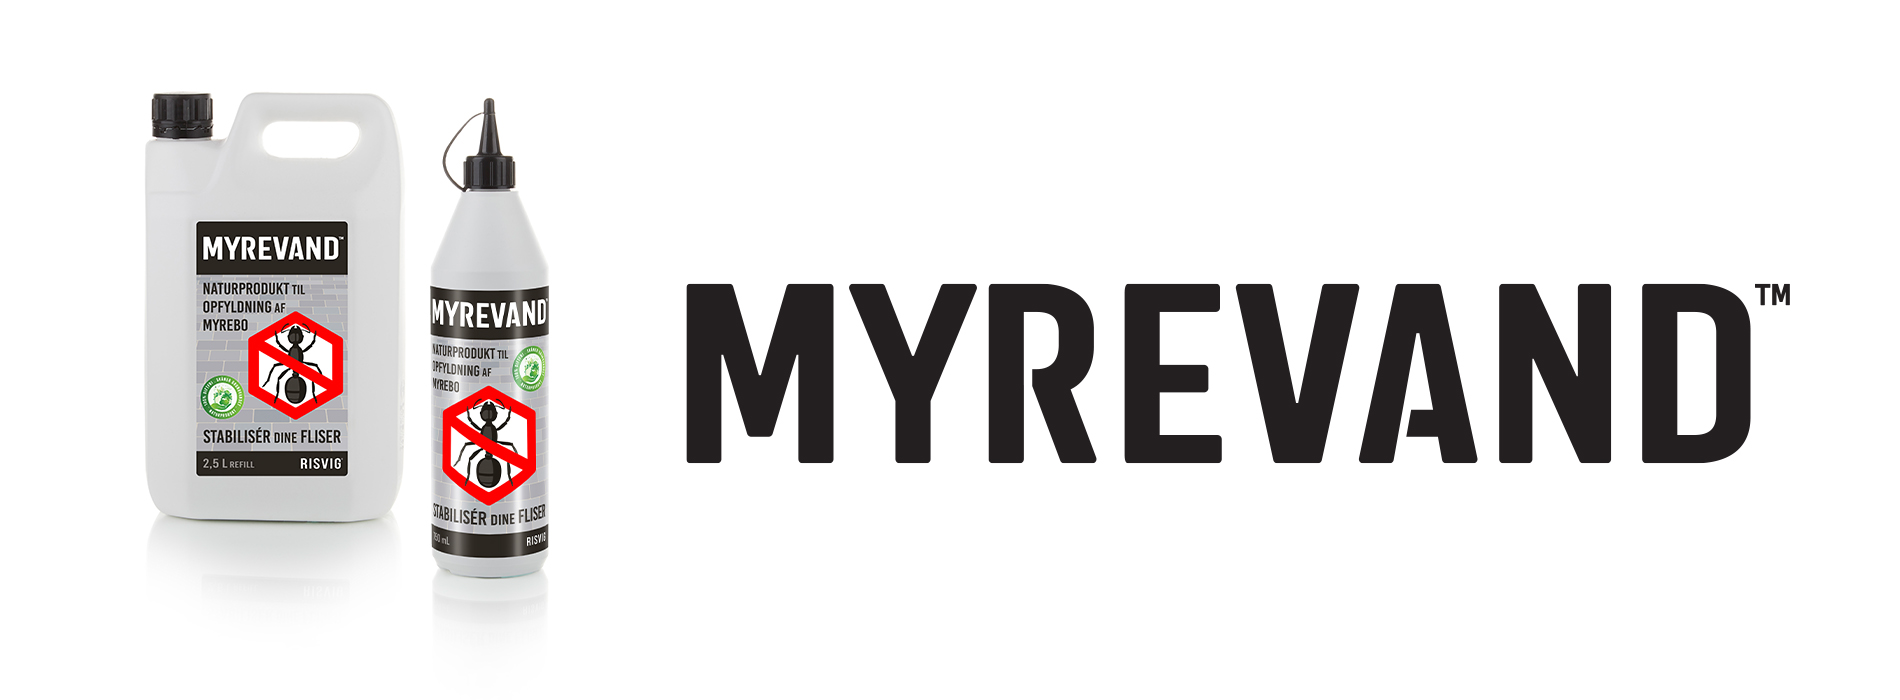 Myrevand banner 1200x450